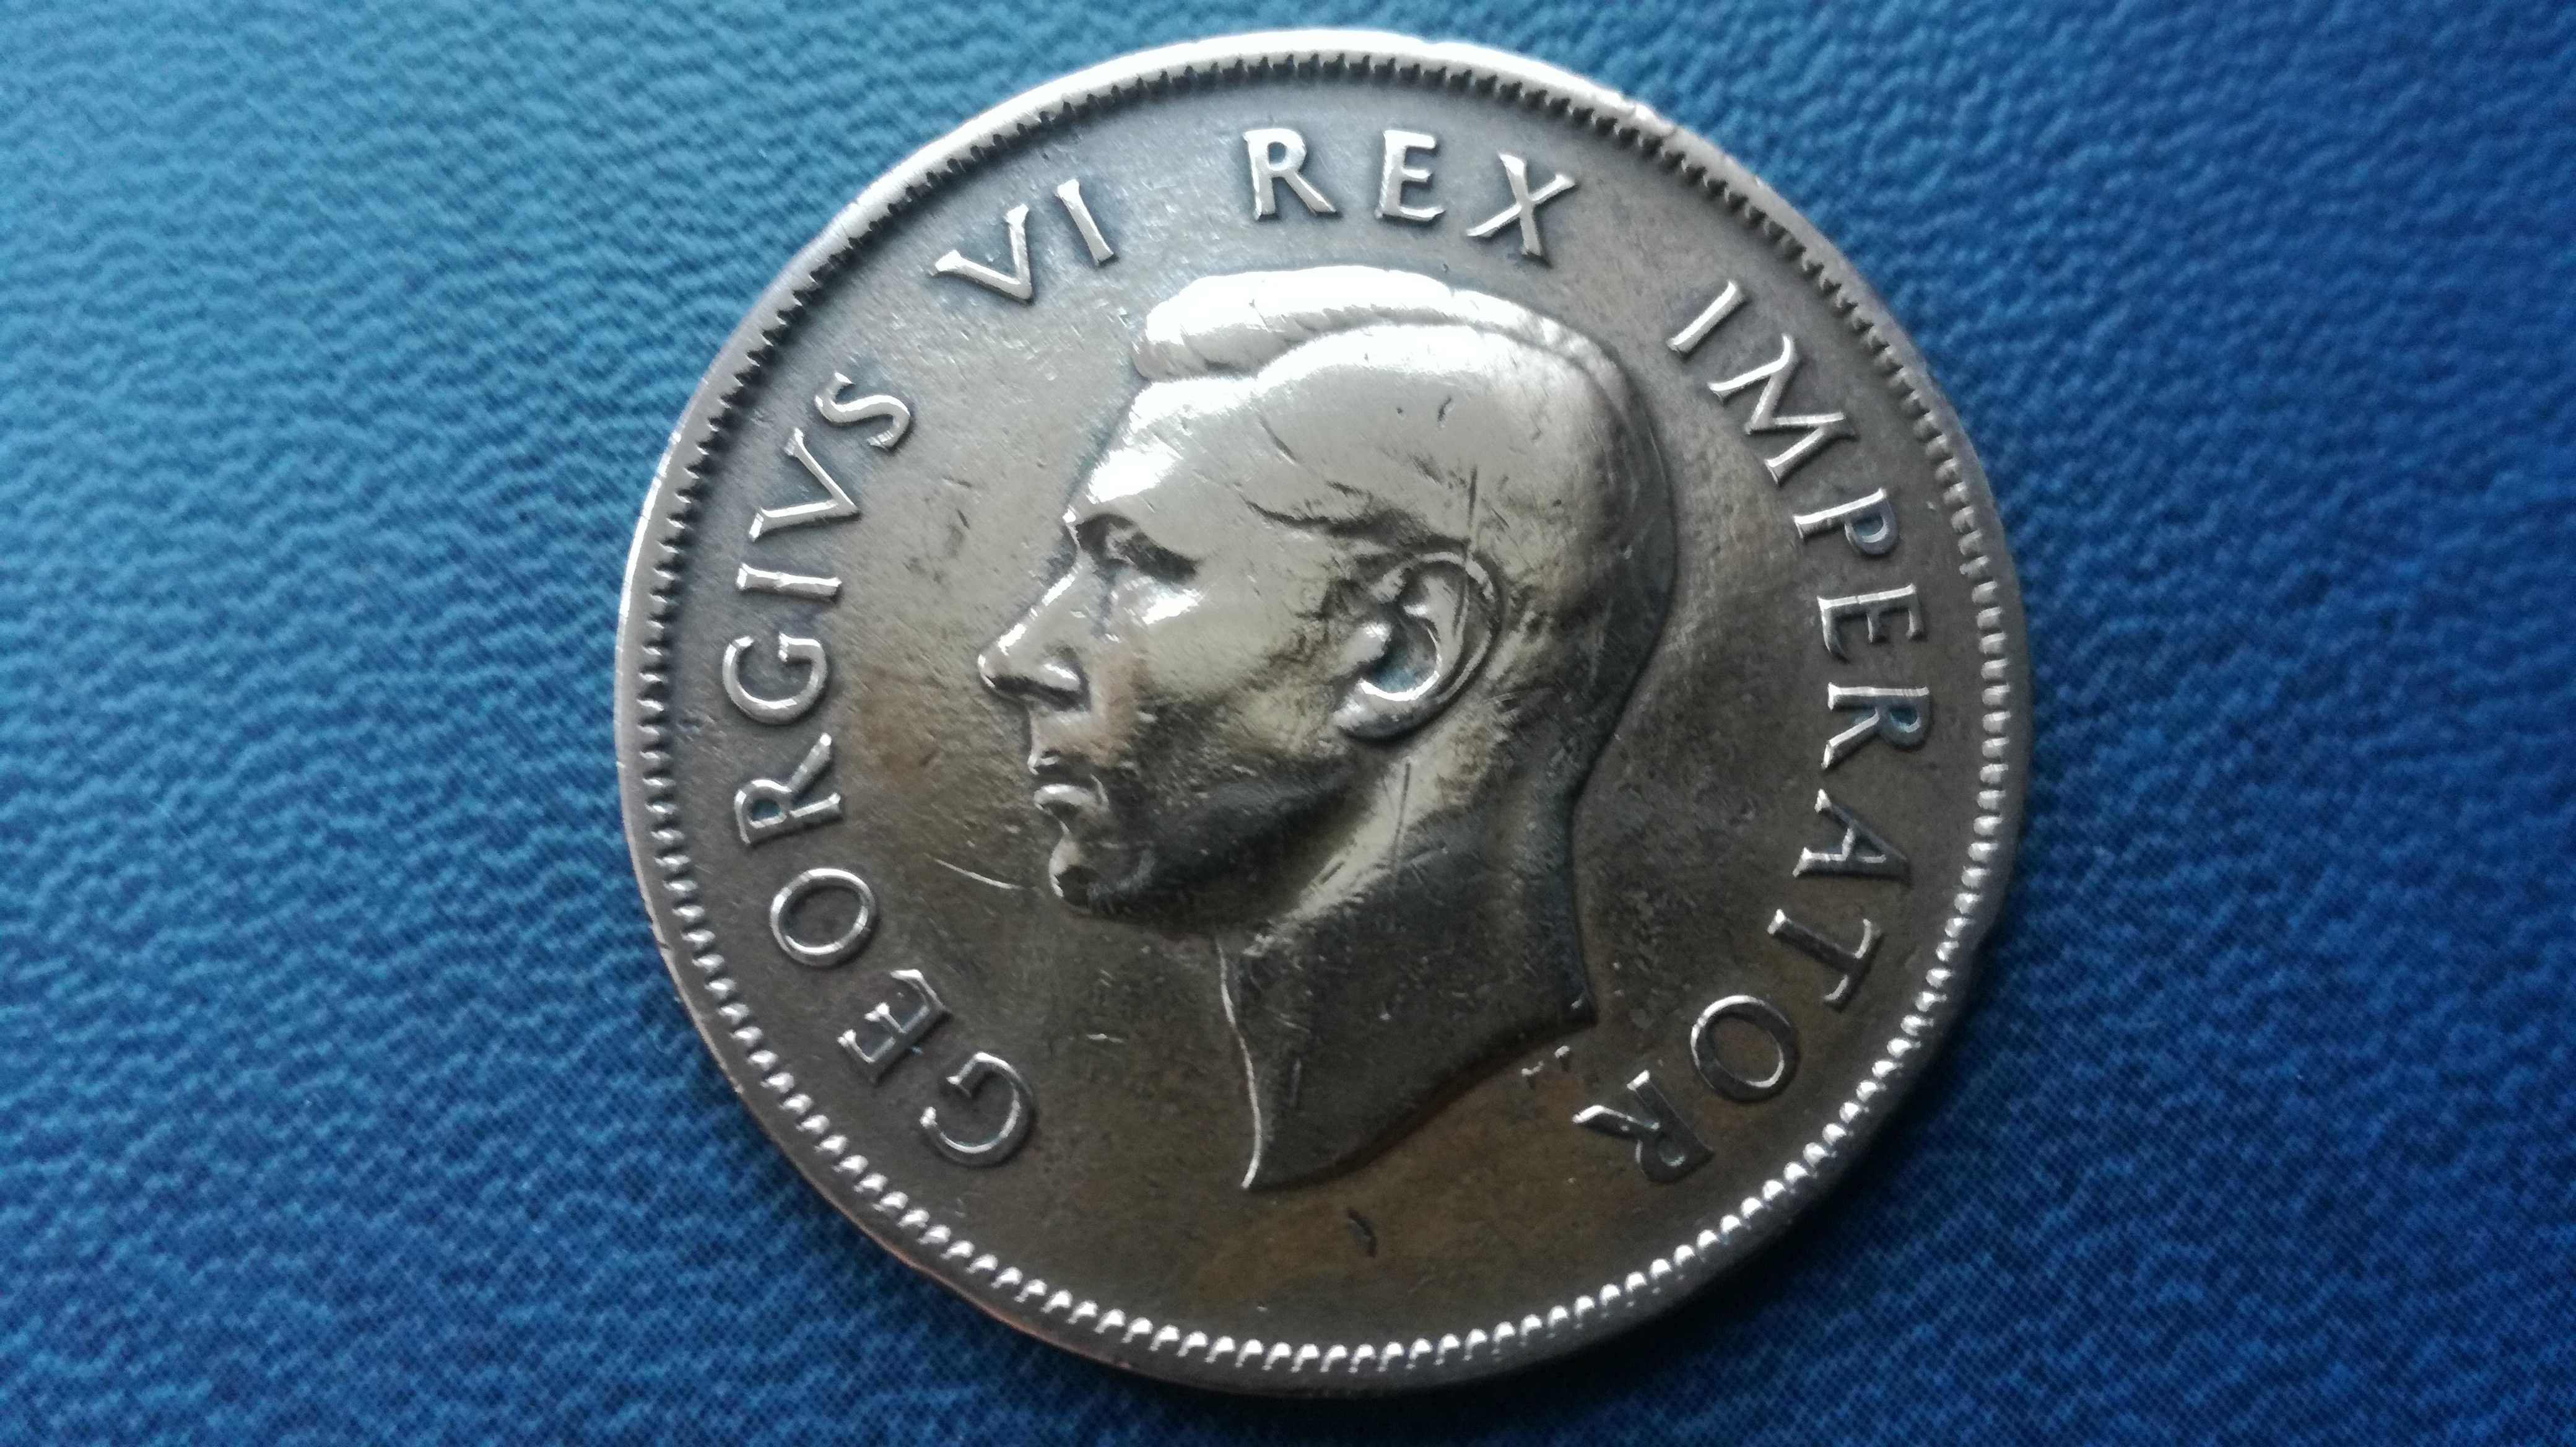 Afryka Południowa (RPA) one penny (pens) 1942